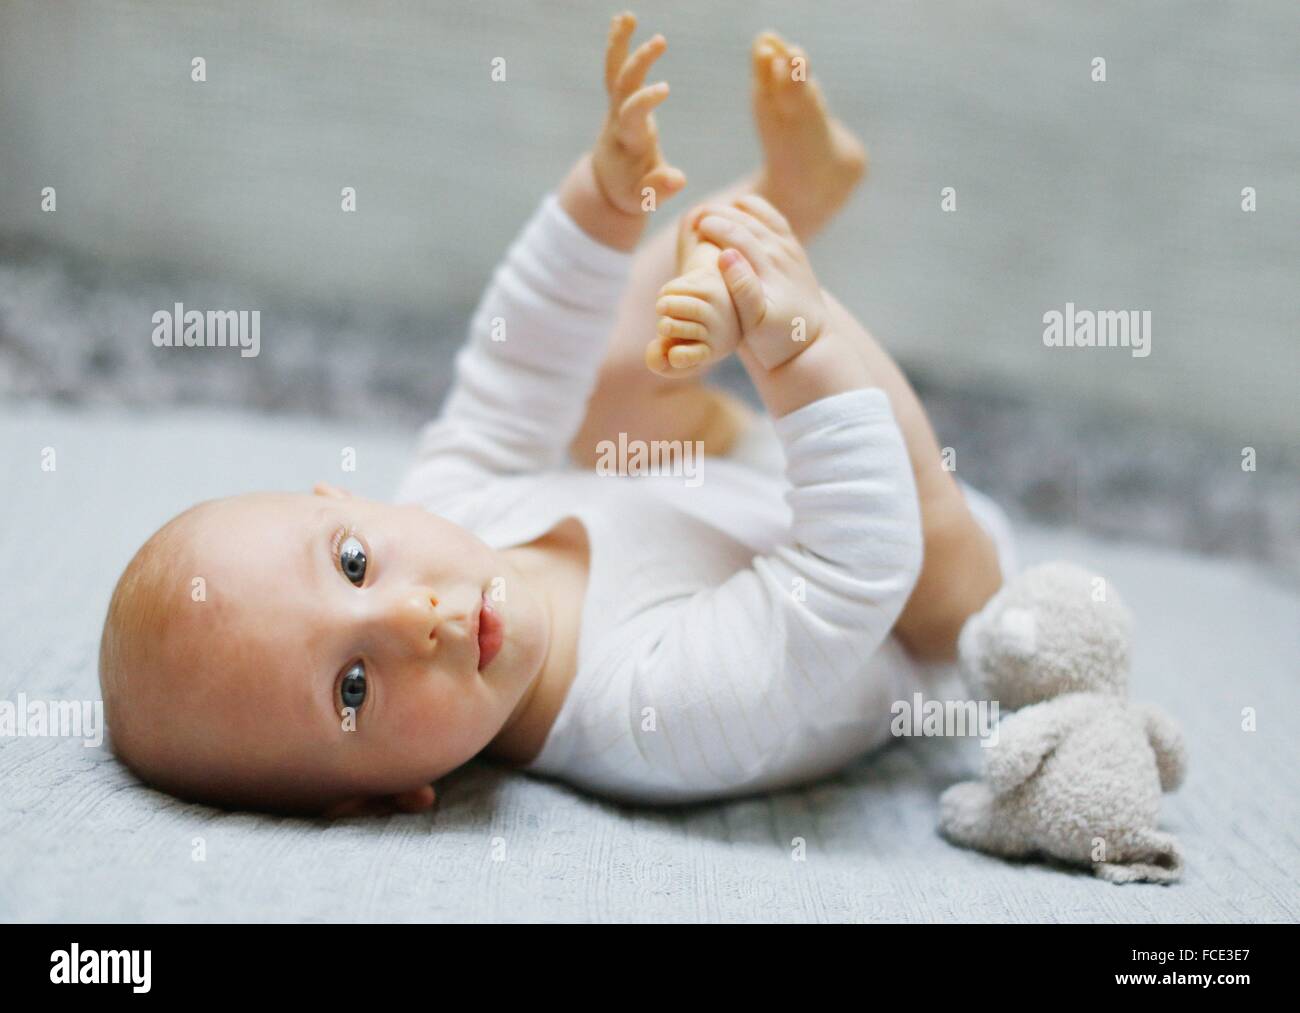 8 mois bébé garçon couché et jouant avec ses pieds Photo Stock - Alamy